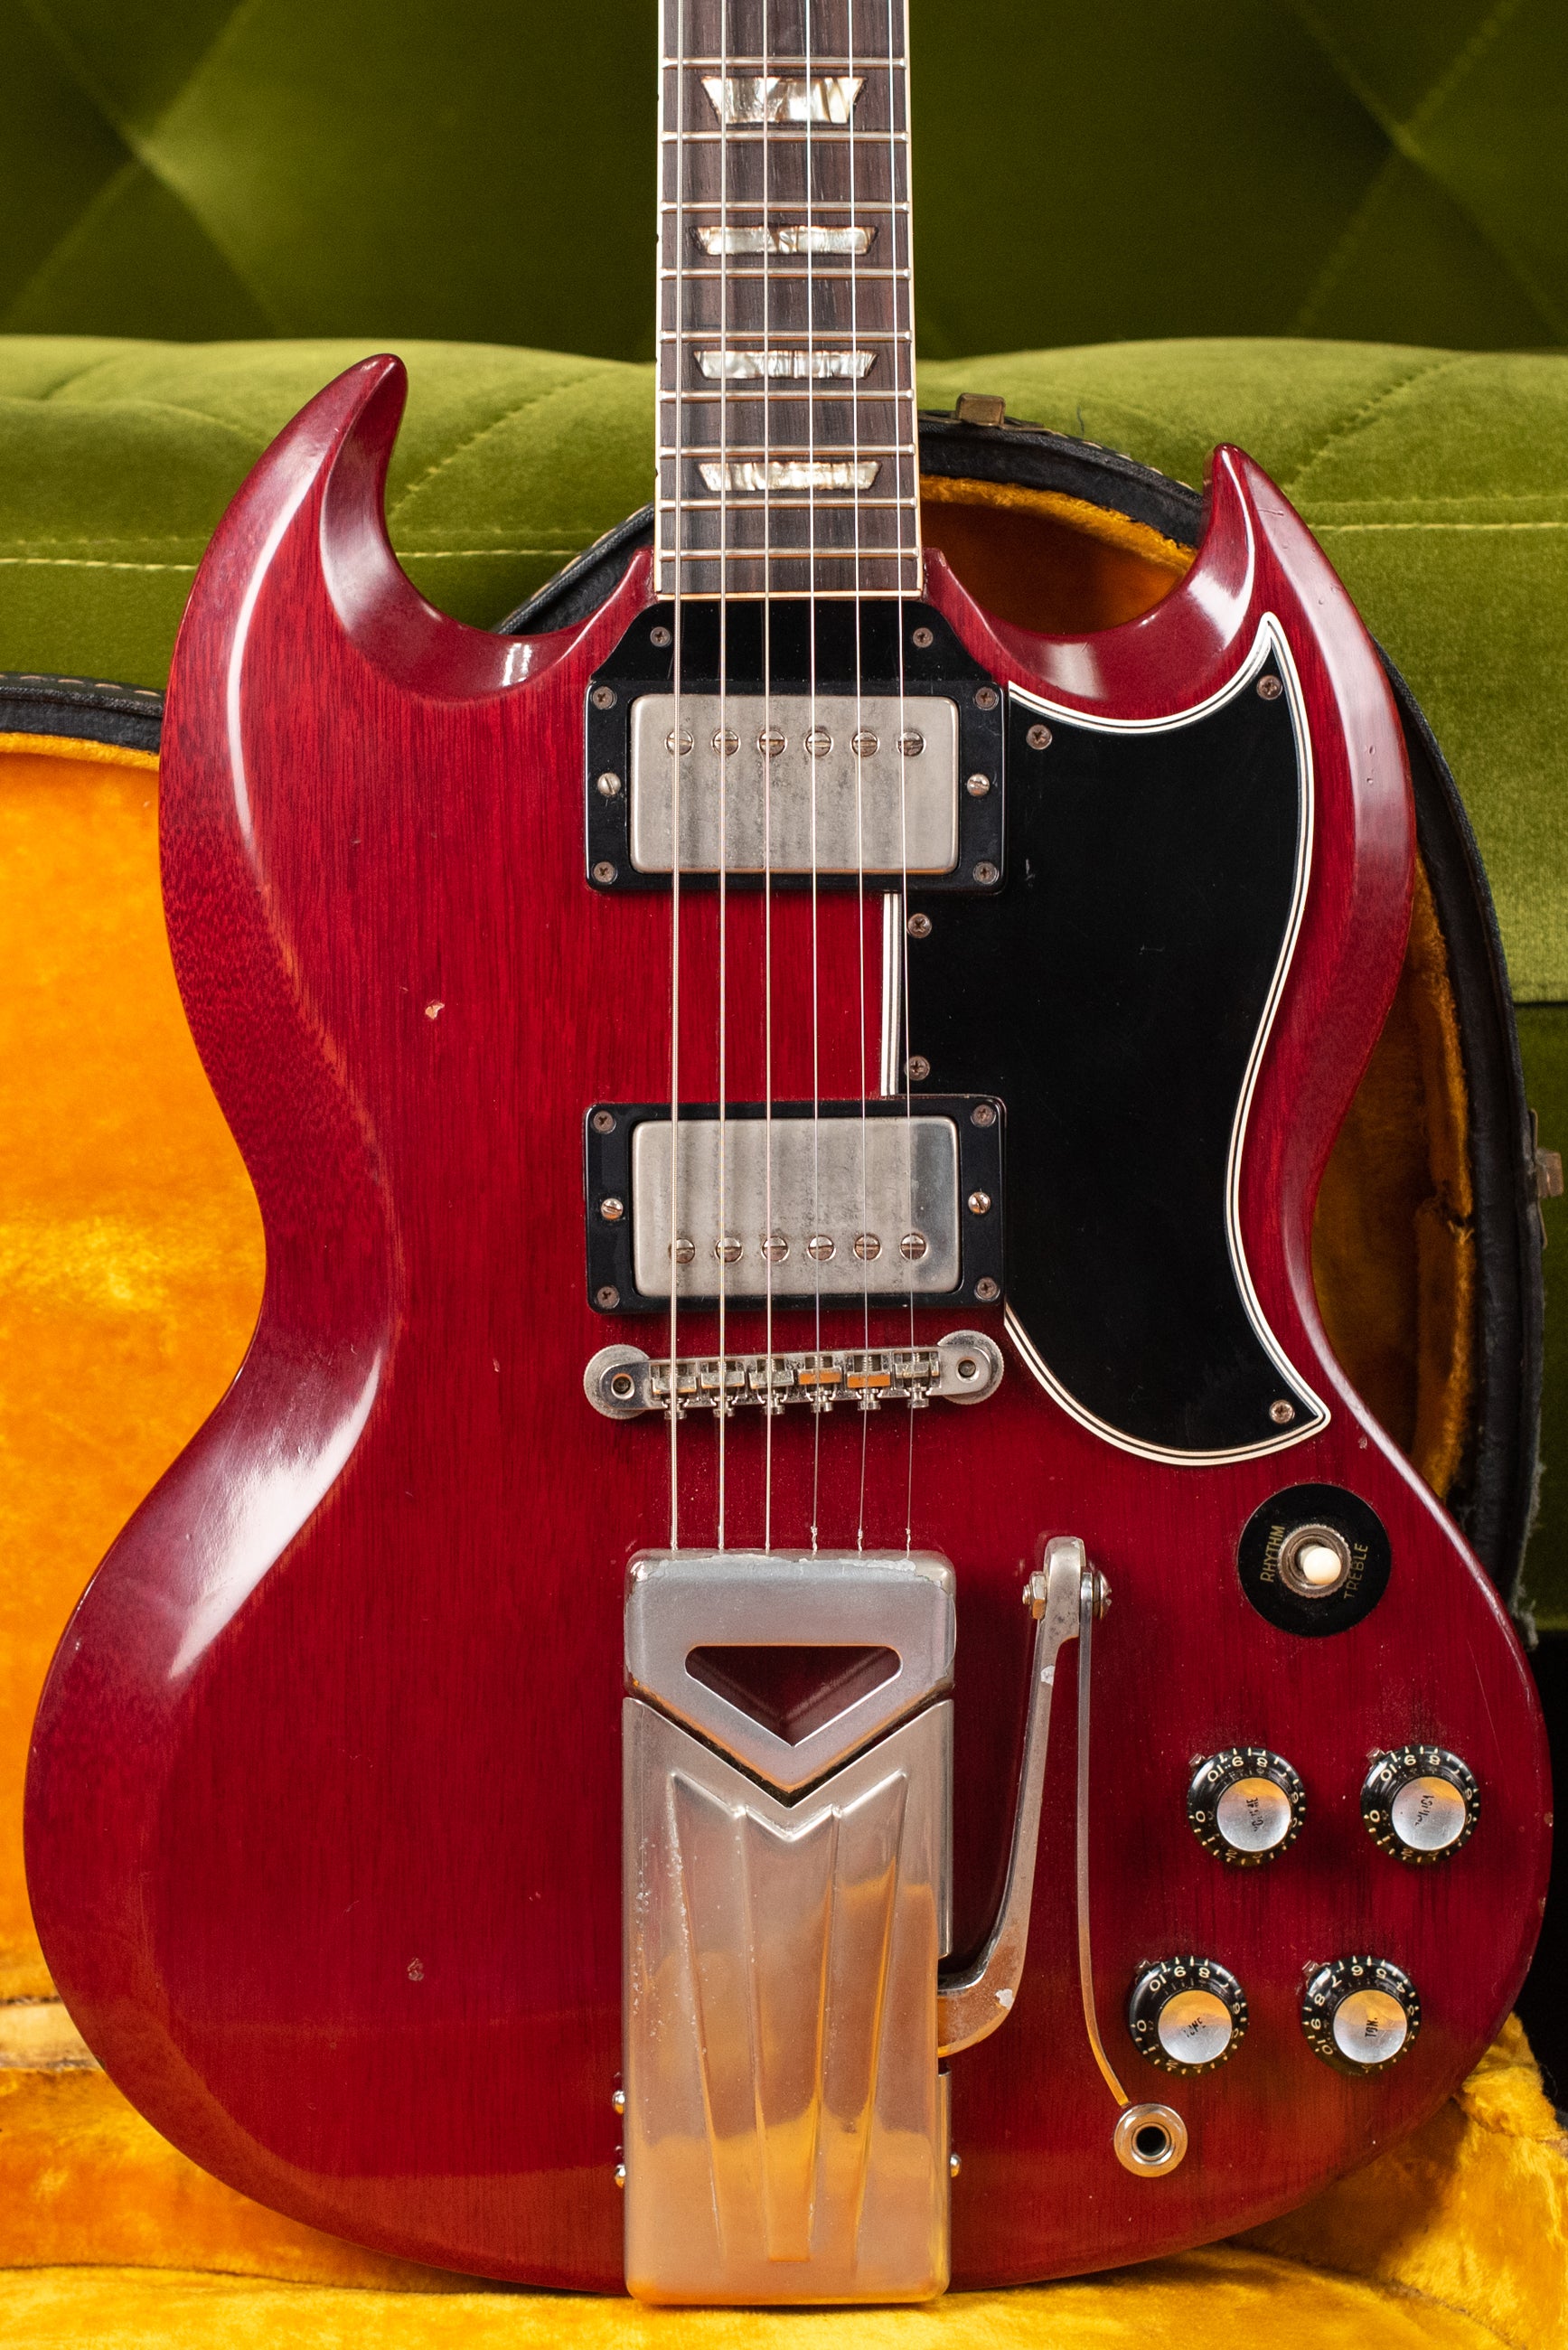 1961 Gibson Les Paul Standard SG guitar